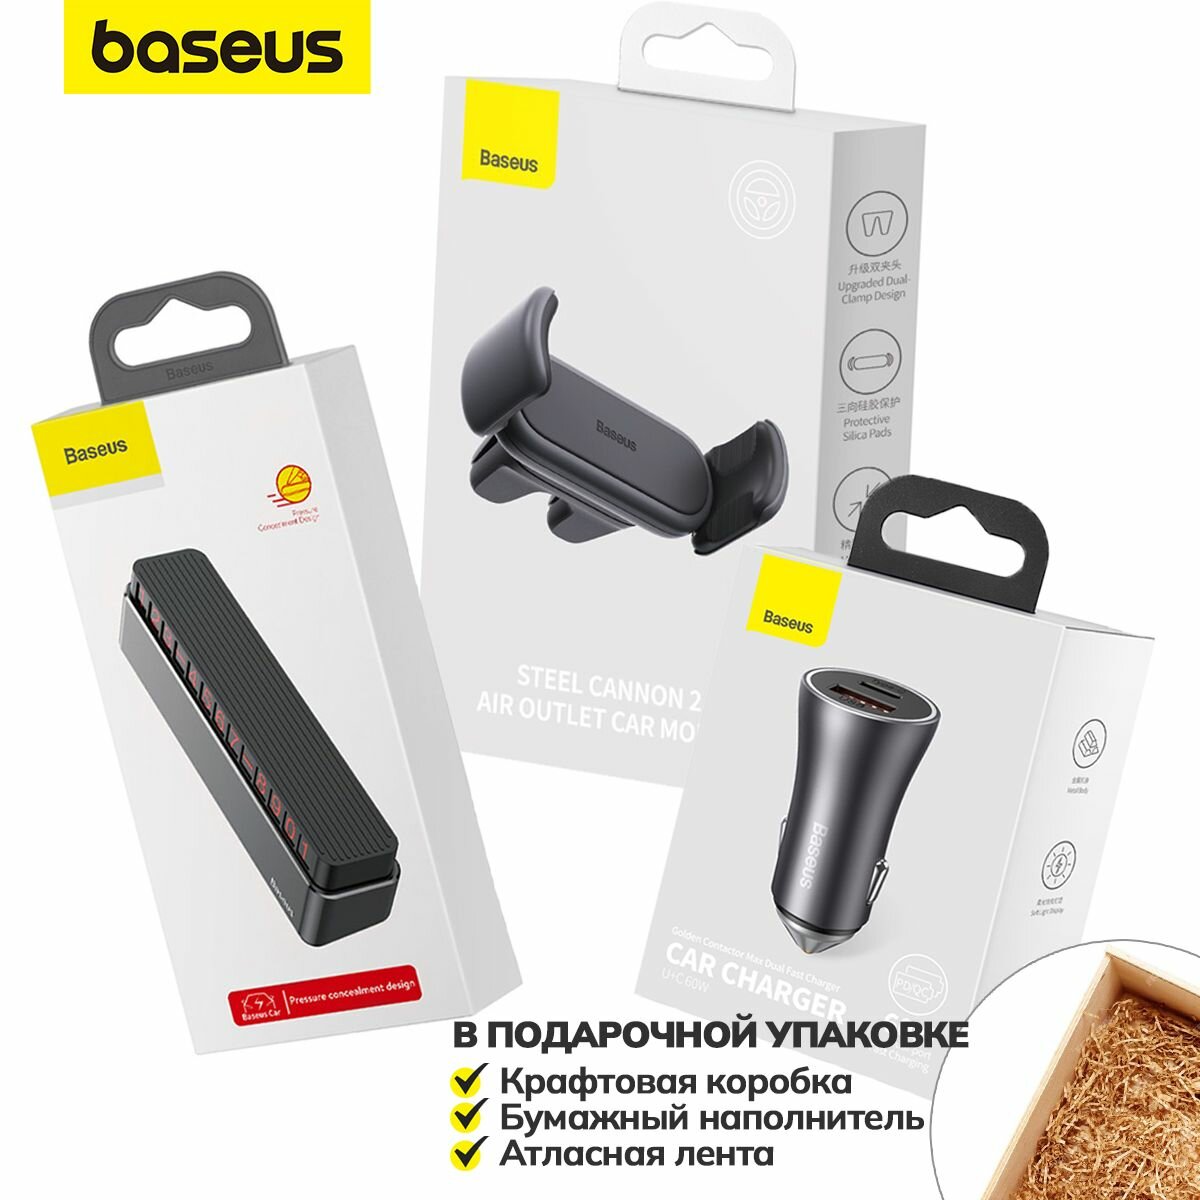 Подарочный набор автолюбителю Baseus №4 (подарок для автомобилиста , зарядное устройство, парковочный номер, держатель для телефона)